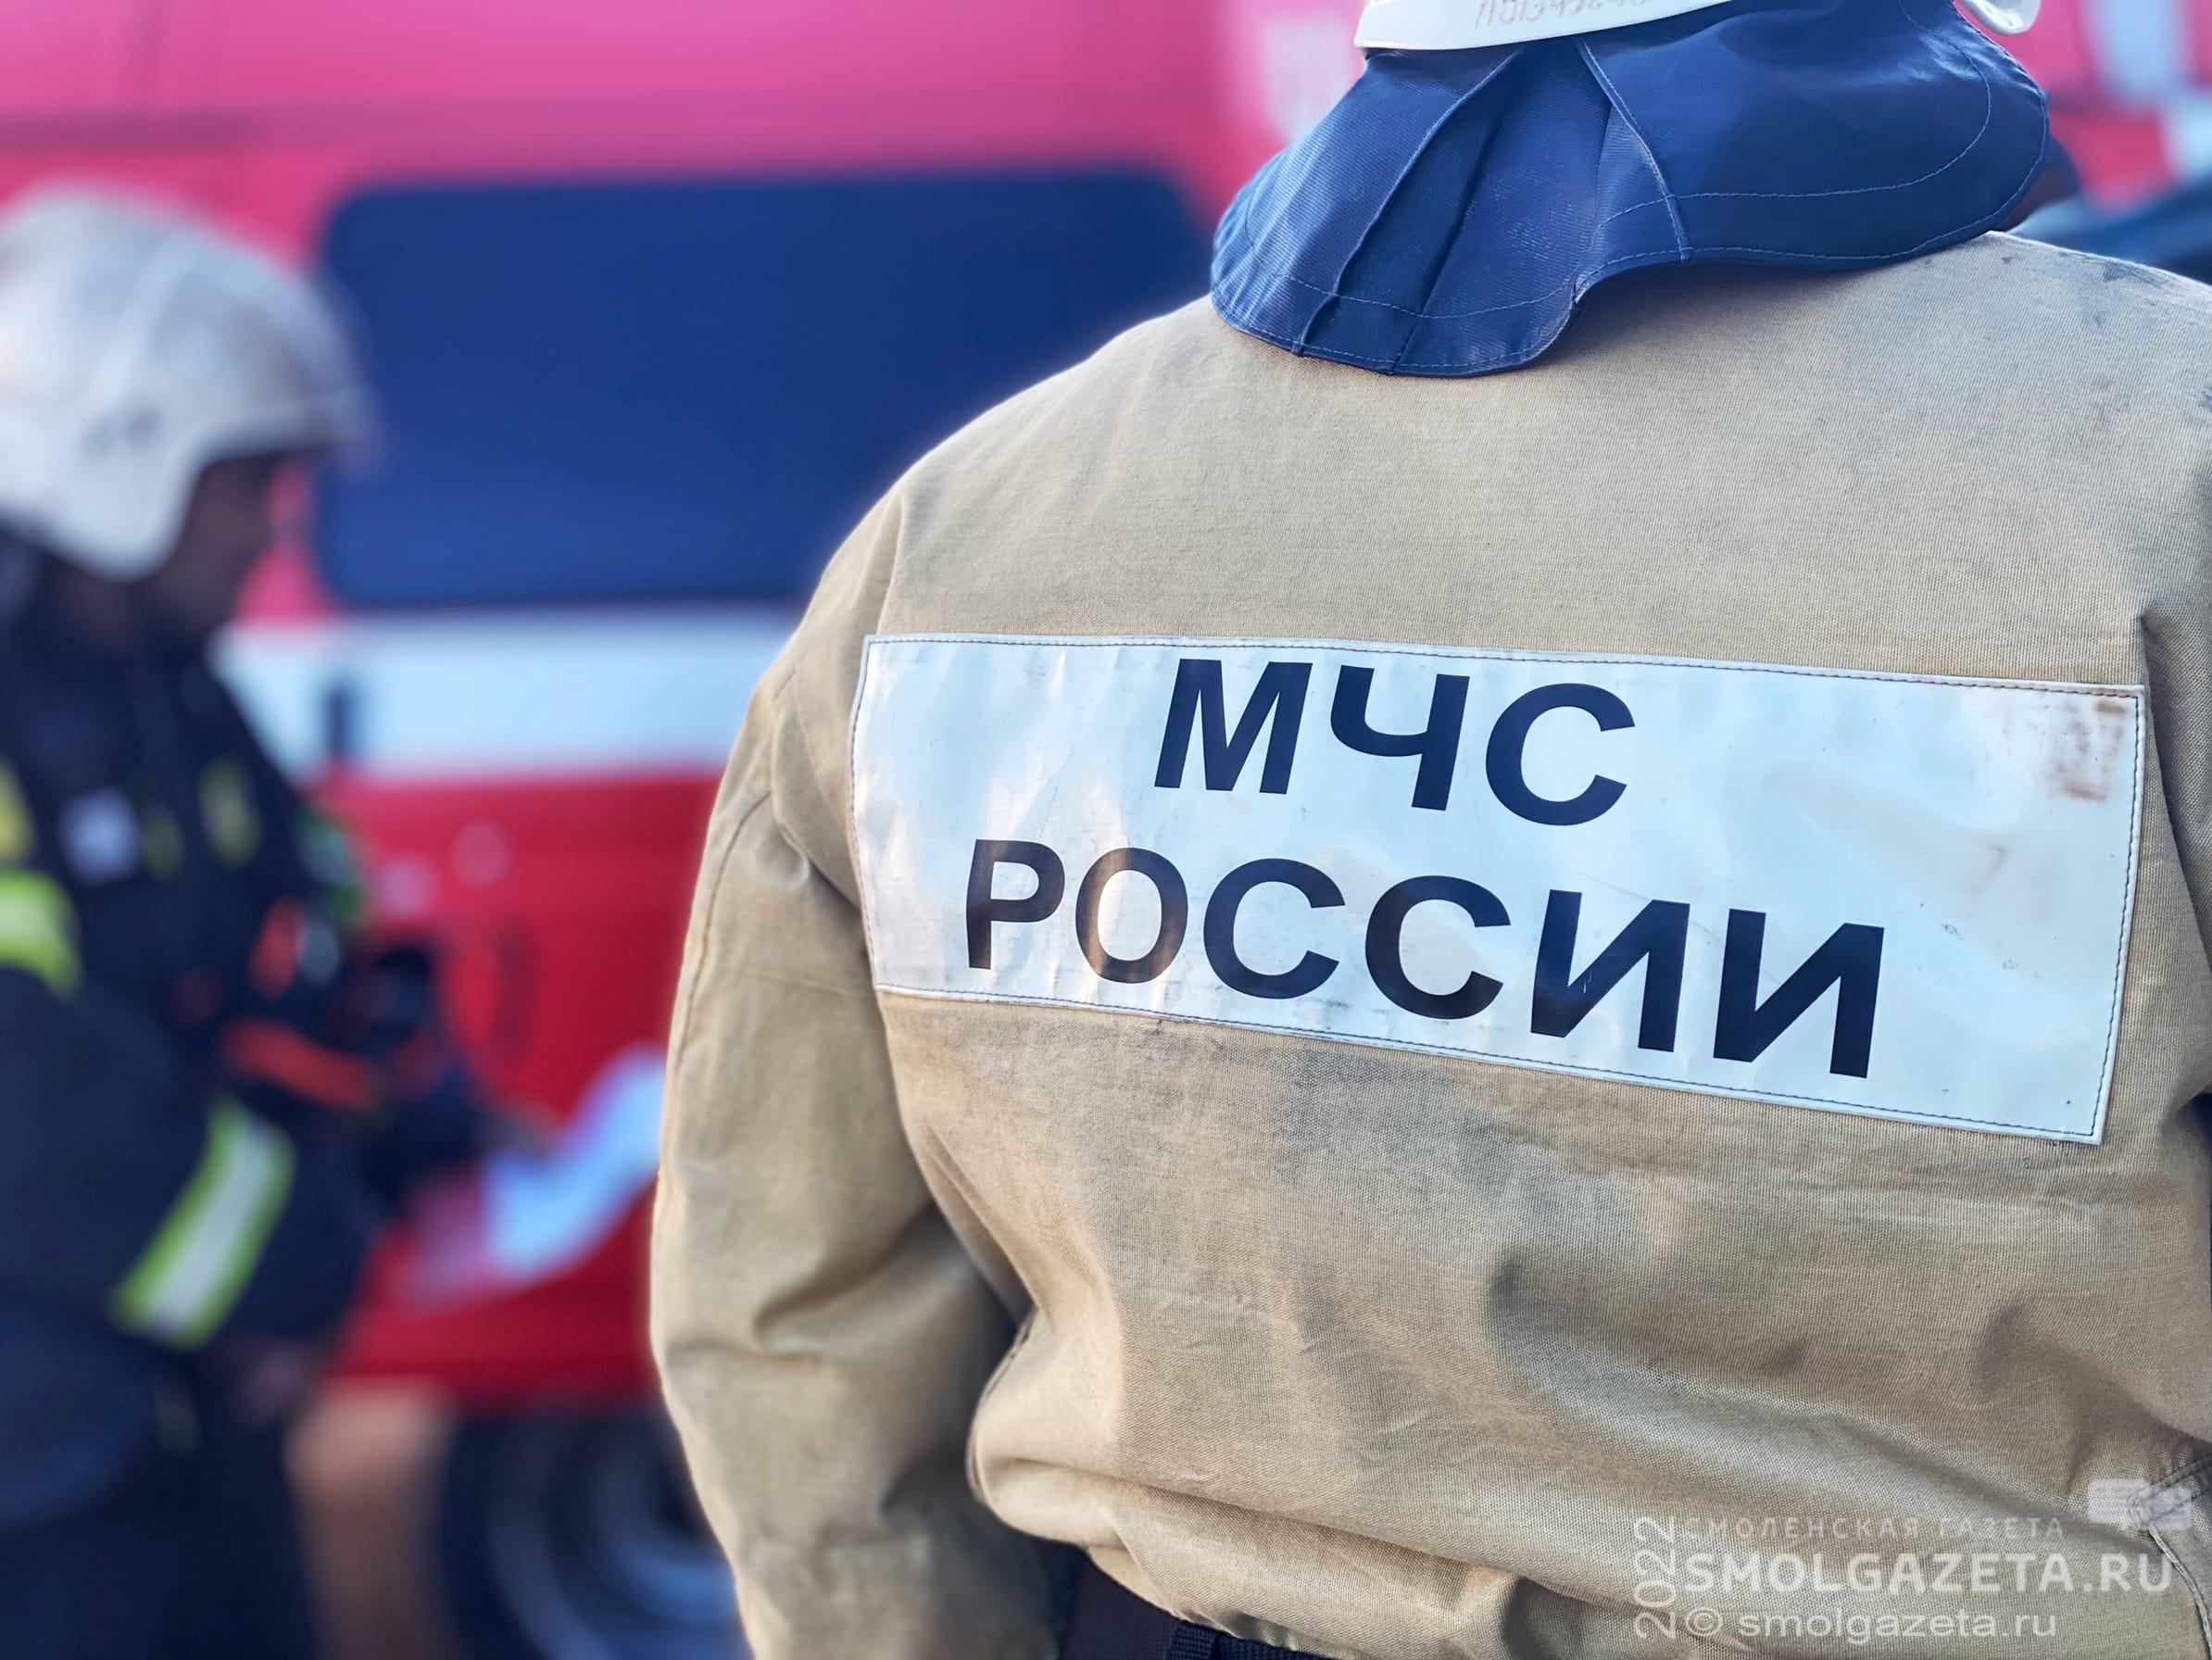 2610 пожаров произошло в Смоленской области за полгода